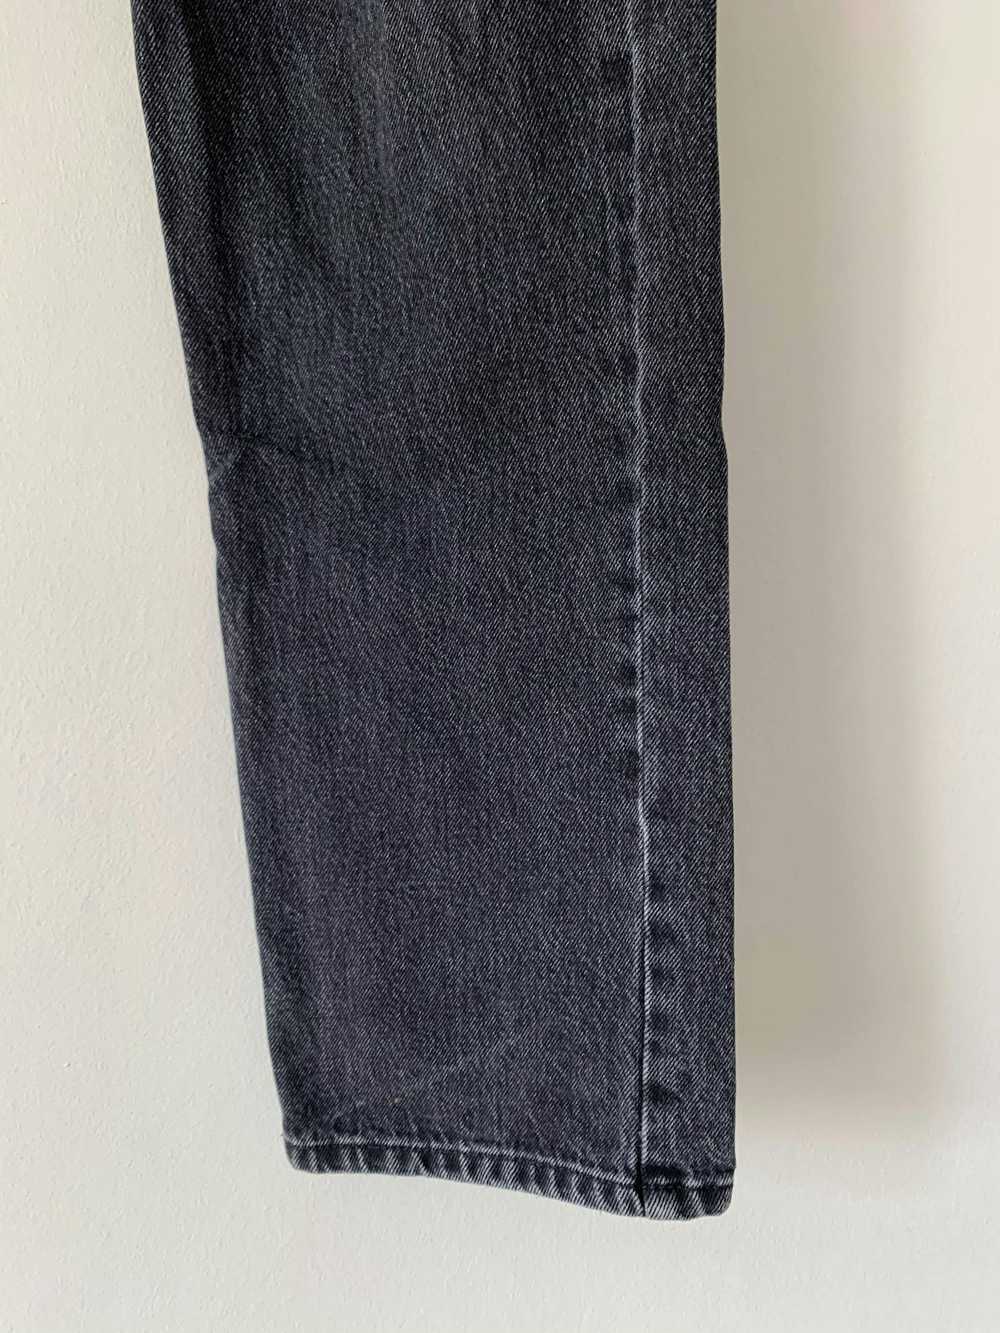 Balenciaga SS18 Washed Grey Jeans - image 4